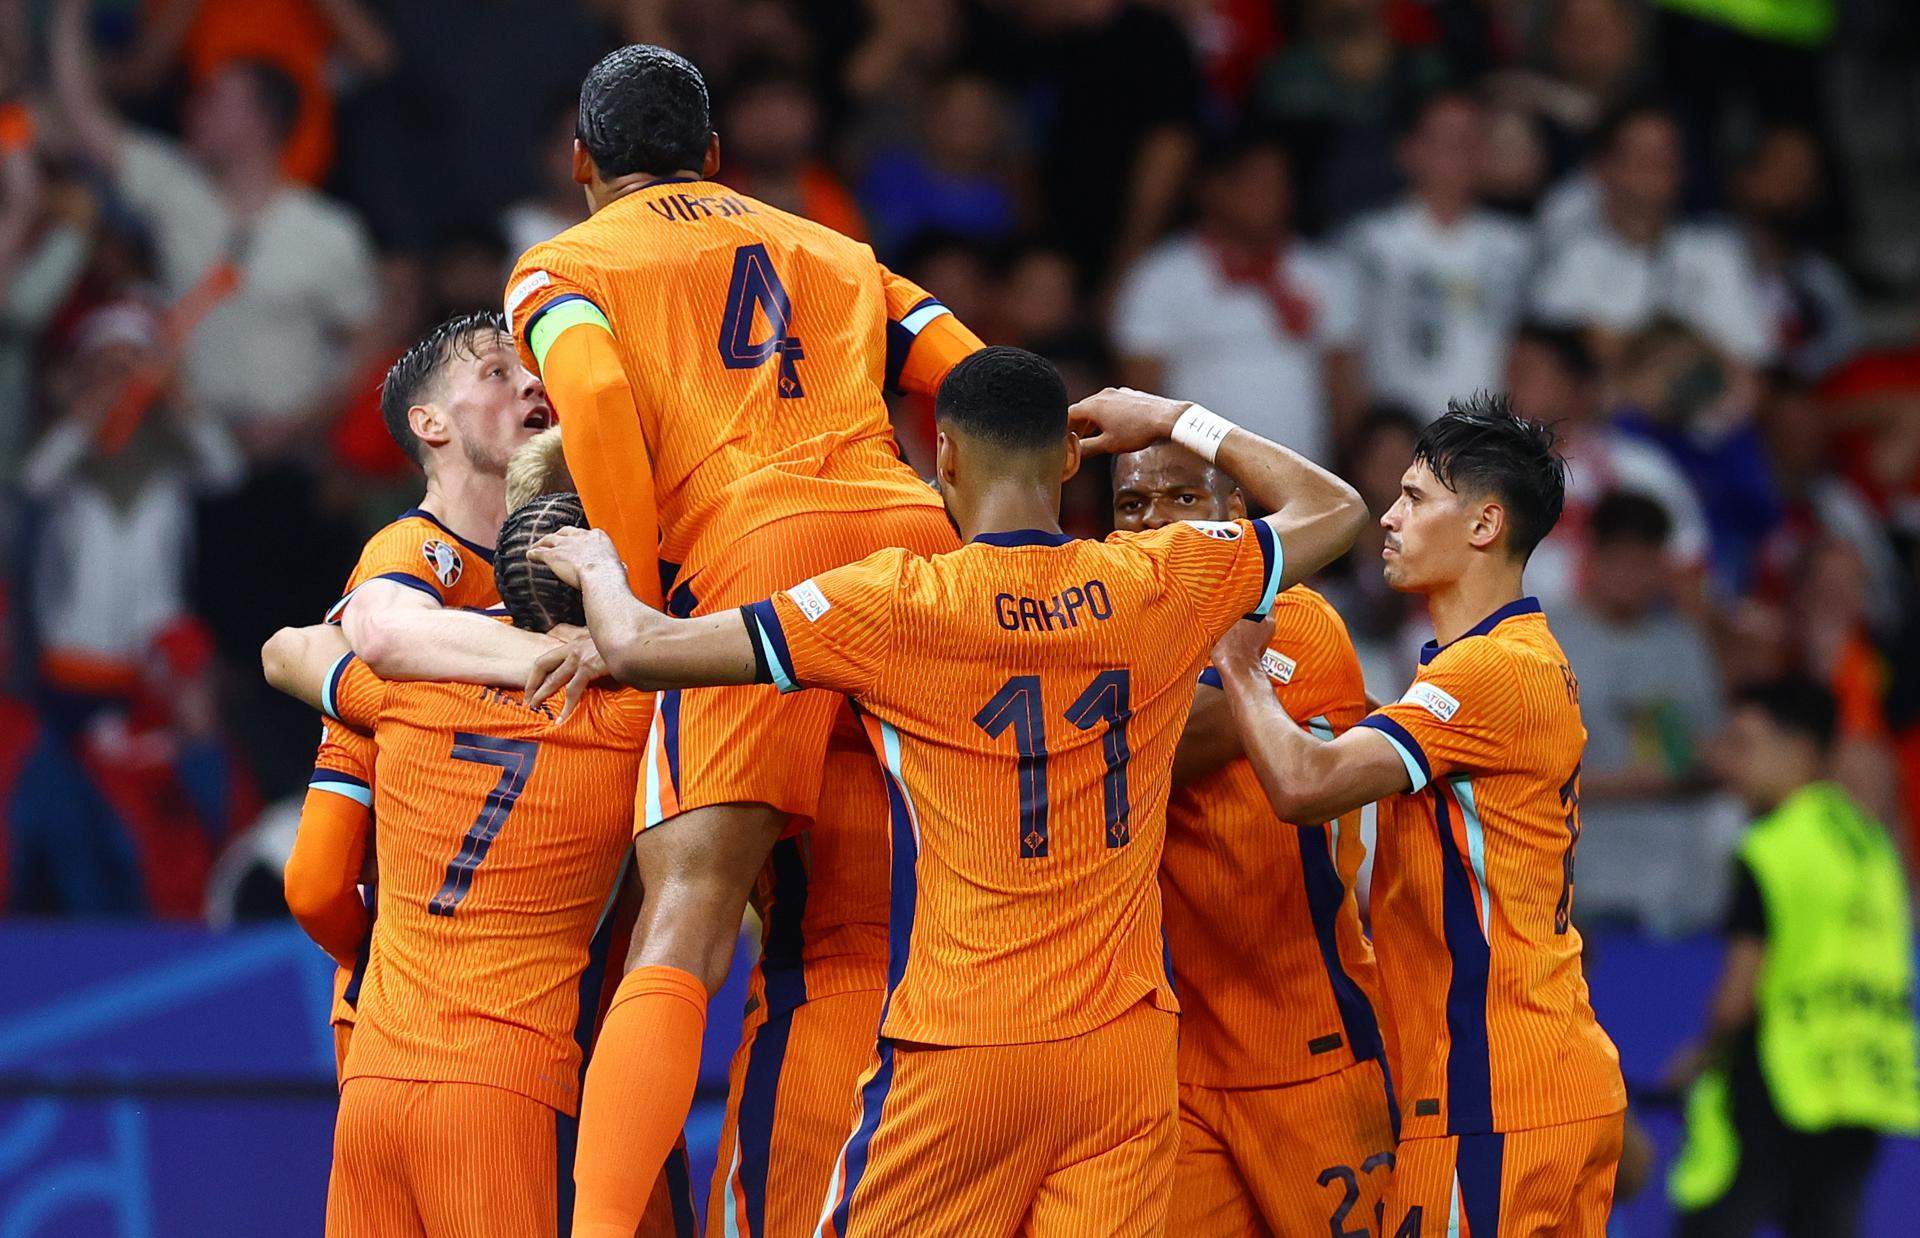 Països Baixos remunta contra Turquia (2-1) i es fica a la semifinal de l'Eurocopa